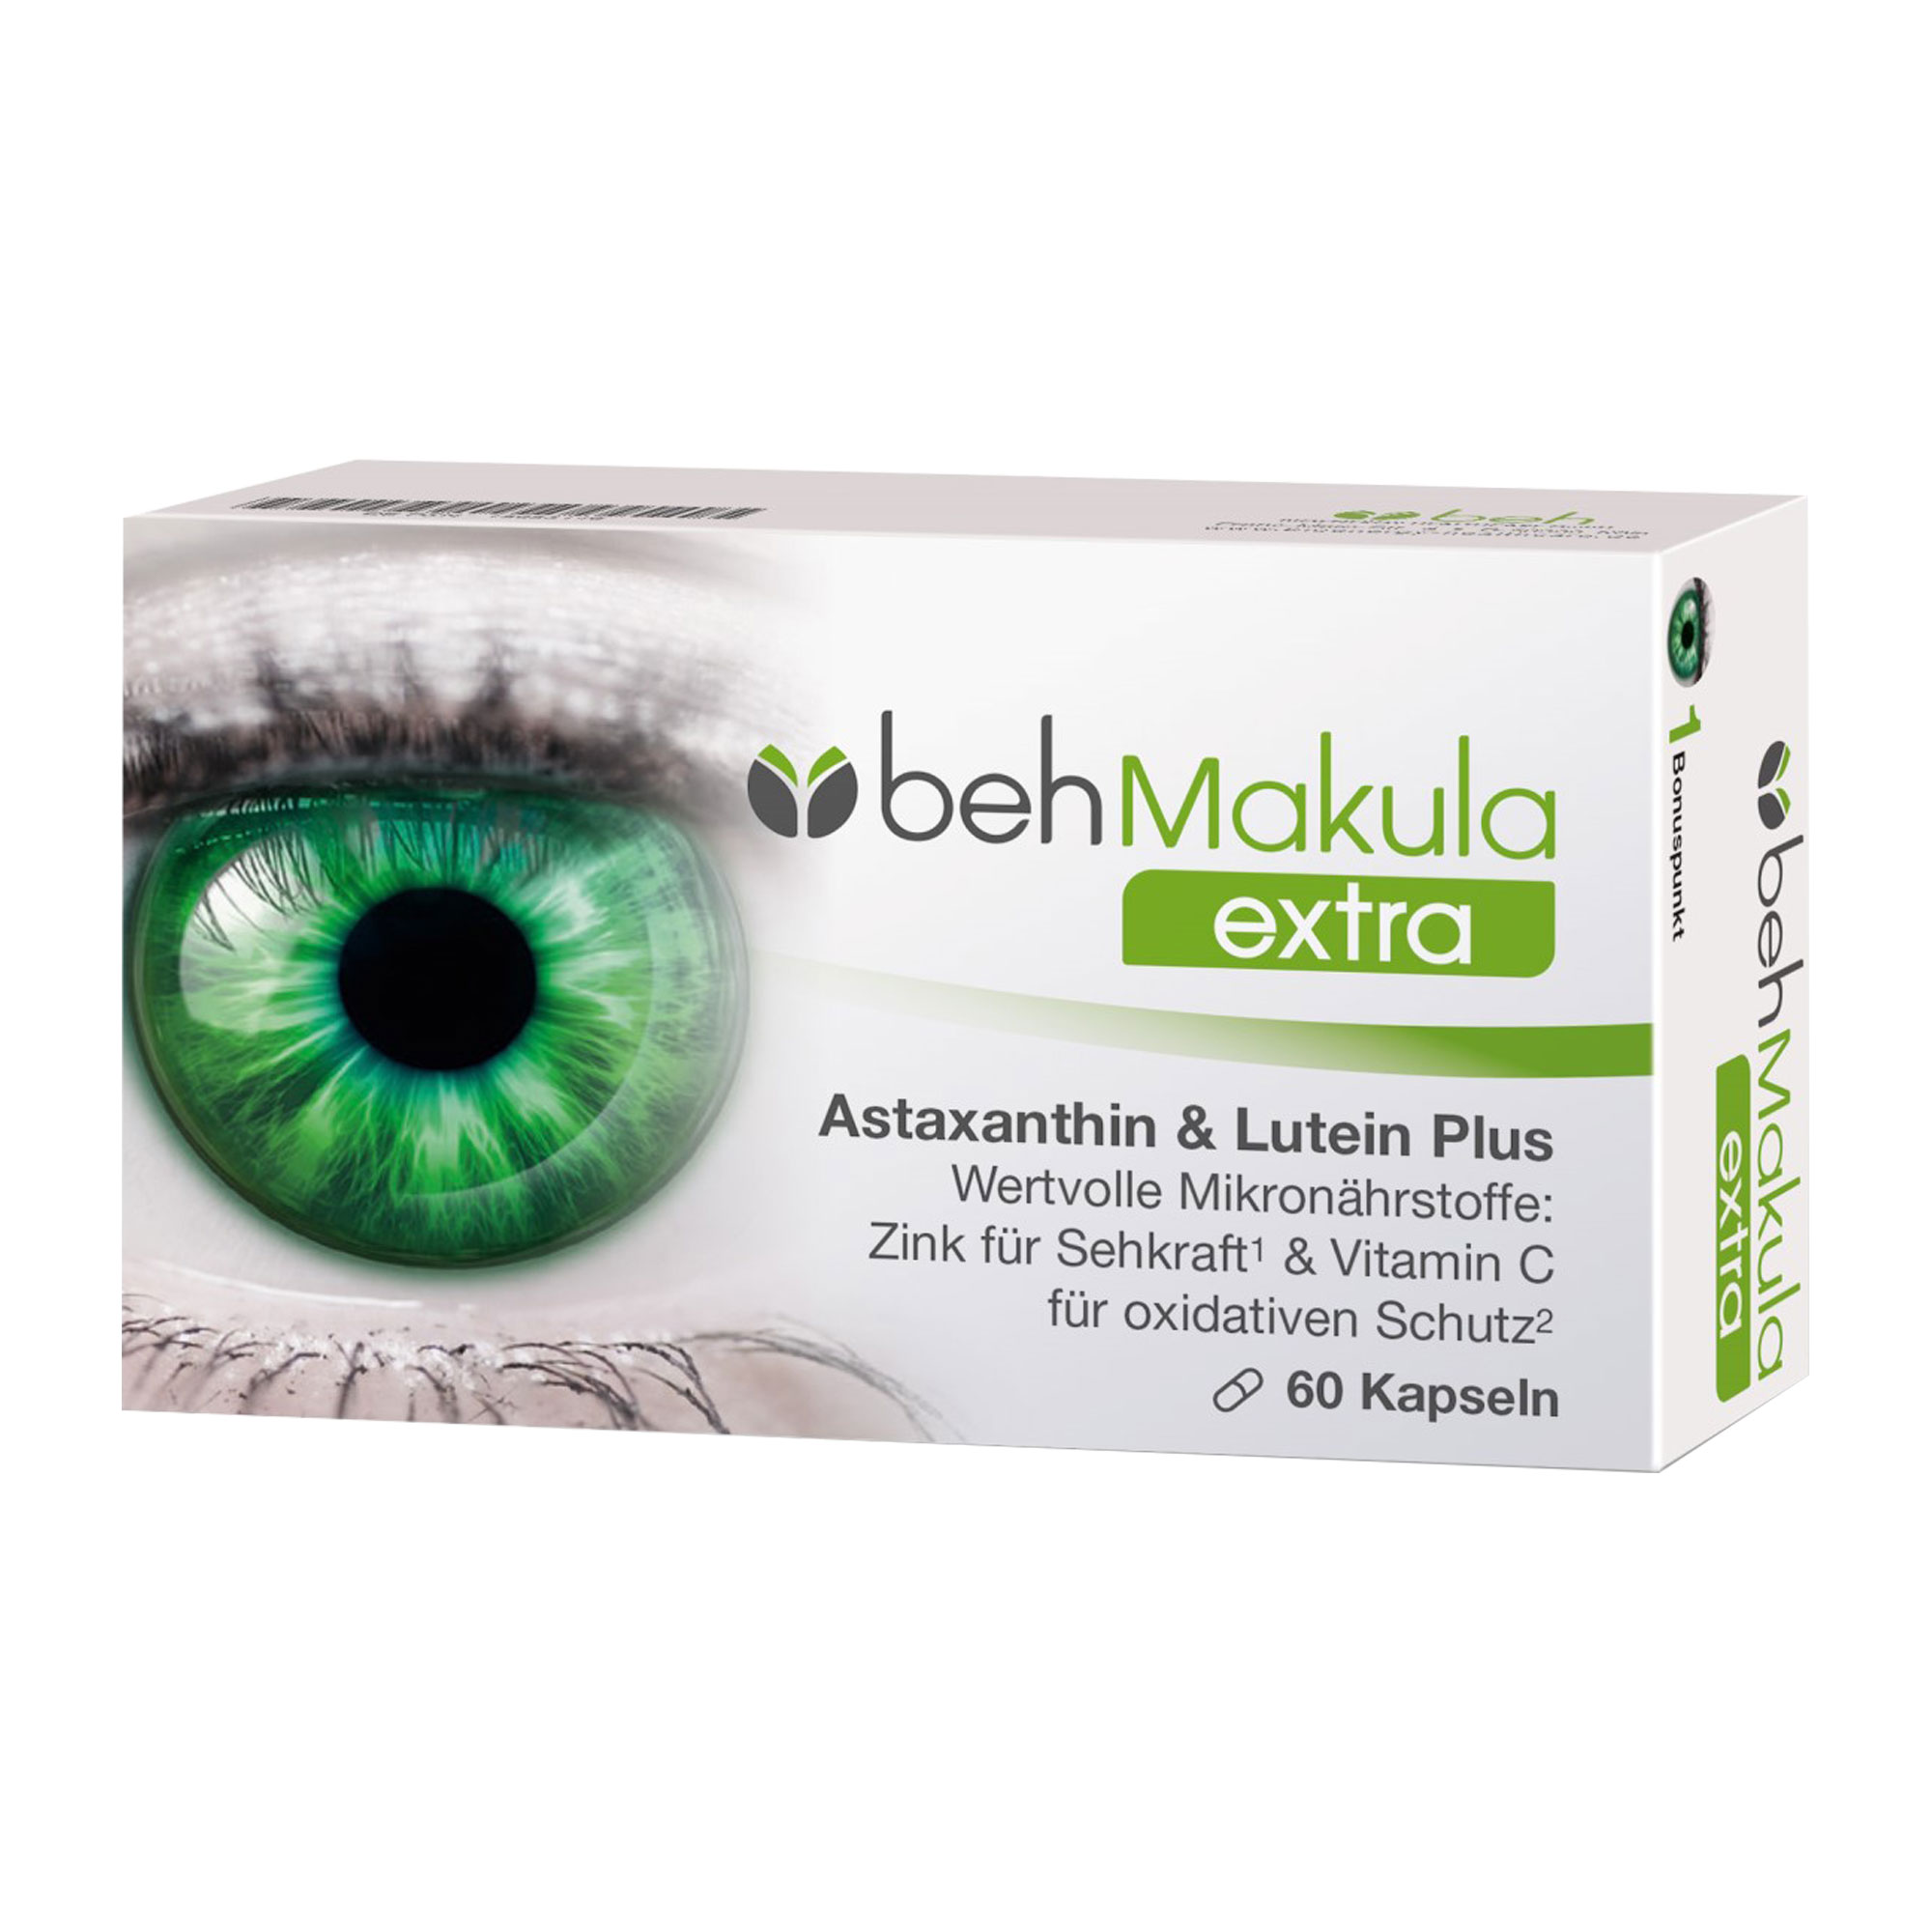 Nahrungsergänzungsmittel mit Vitaminen und Mineralstoffen, Lutein, Astaxanthin & Zeaxanthin. Für den Erhalt einer gesunden Augenfunktion und Sehkraft.